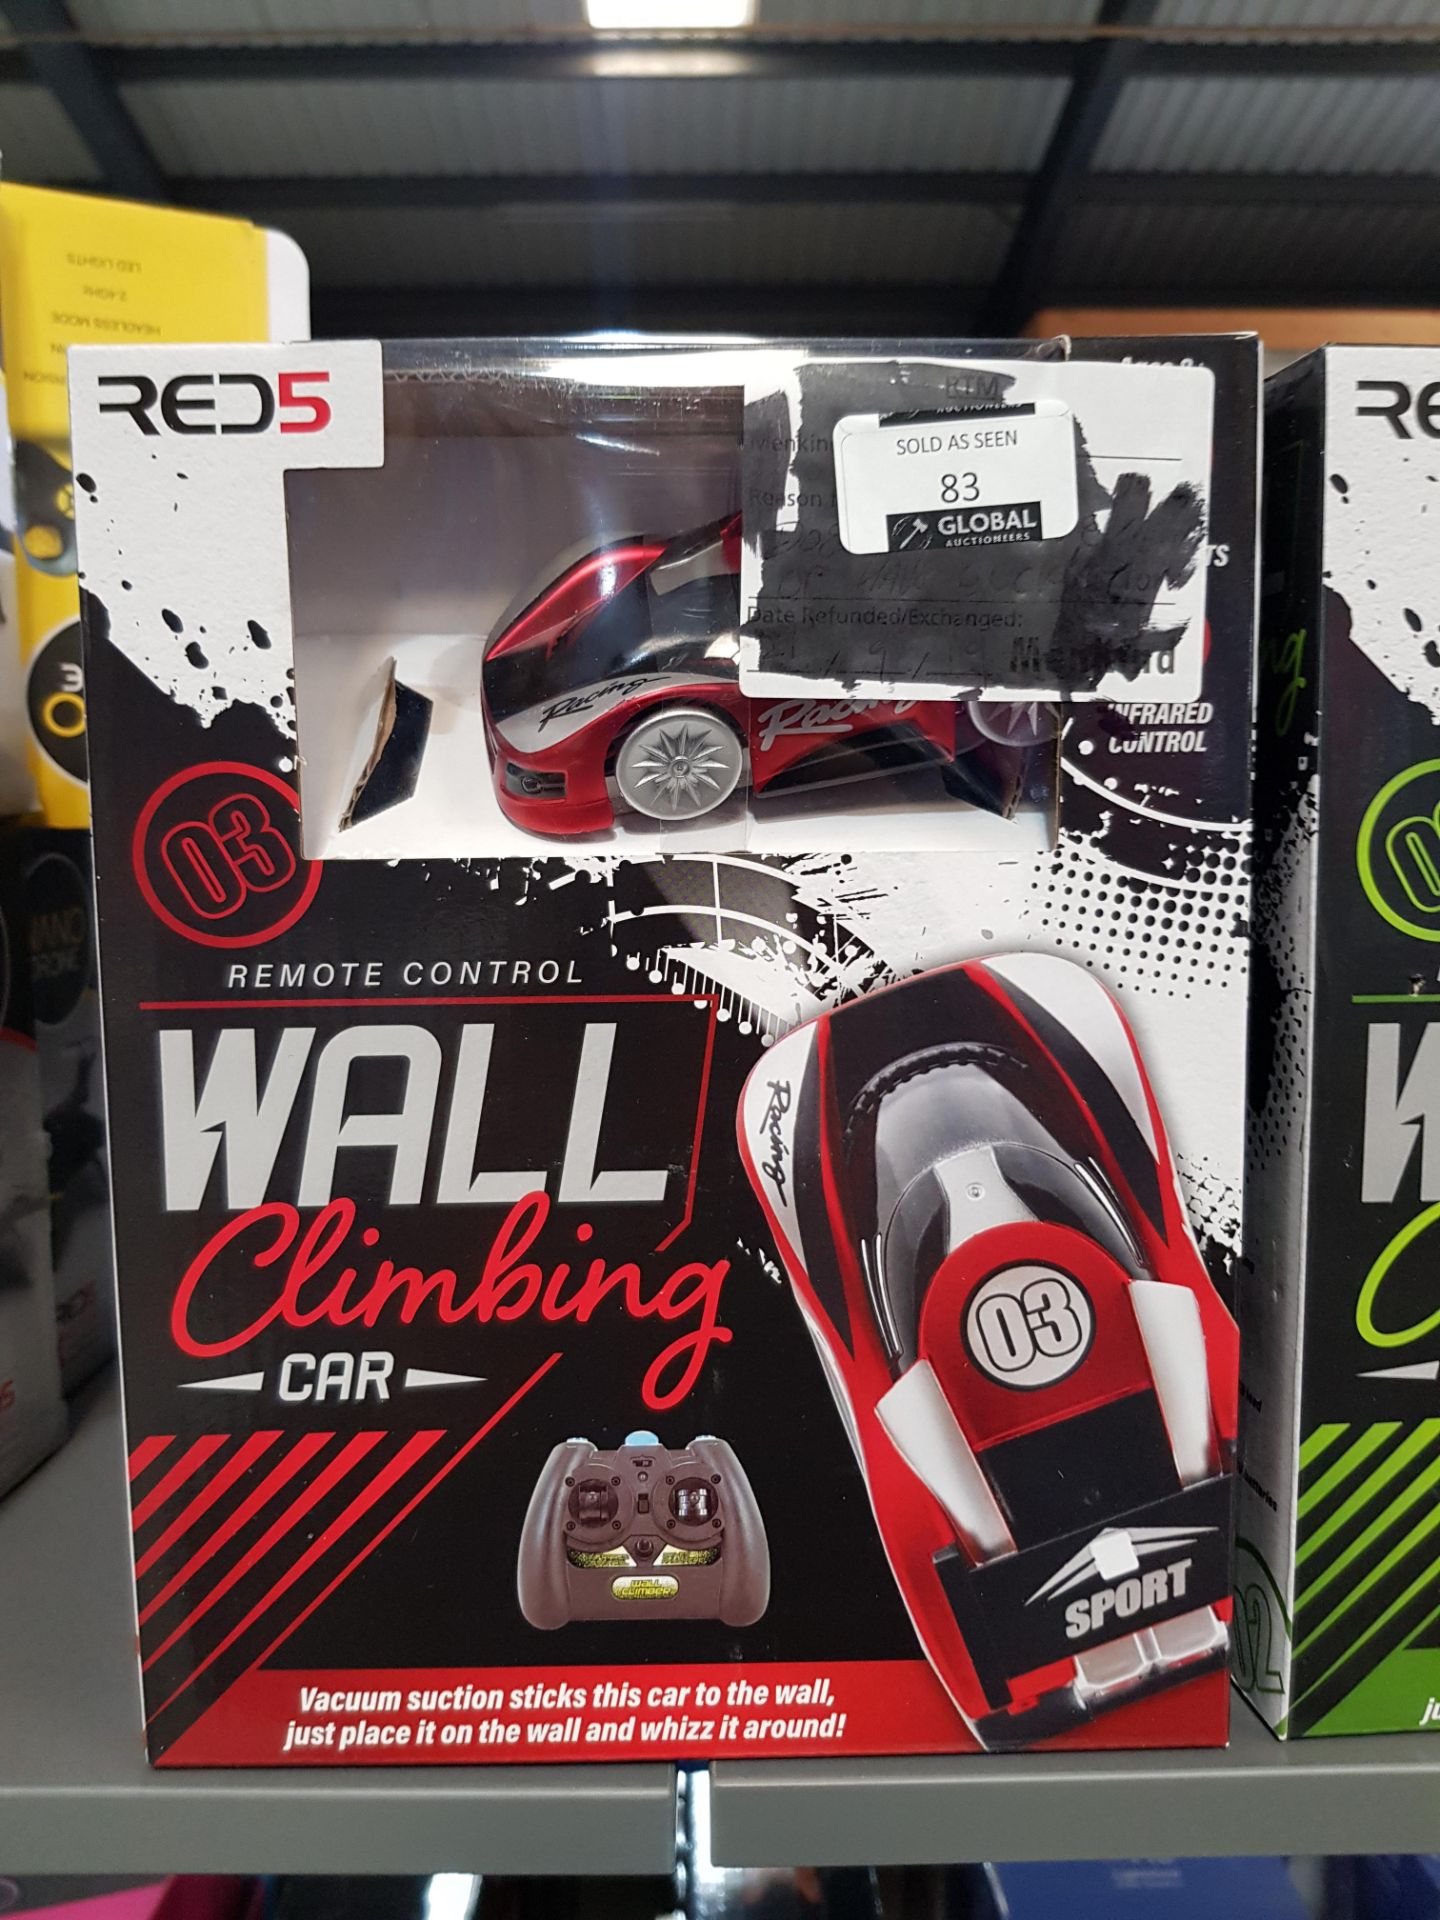 10 X RED5 RC WALL CLIMBING CAR